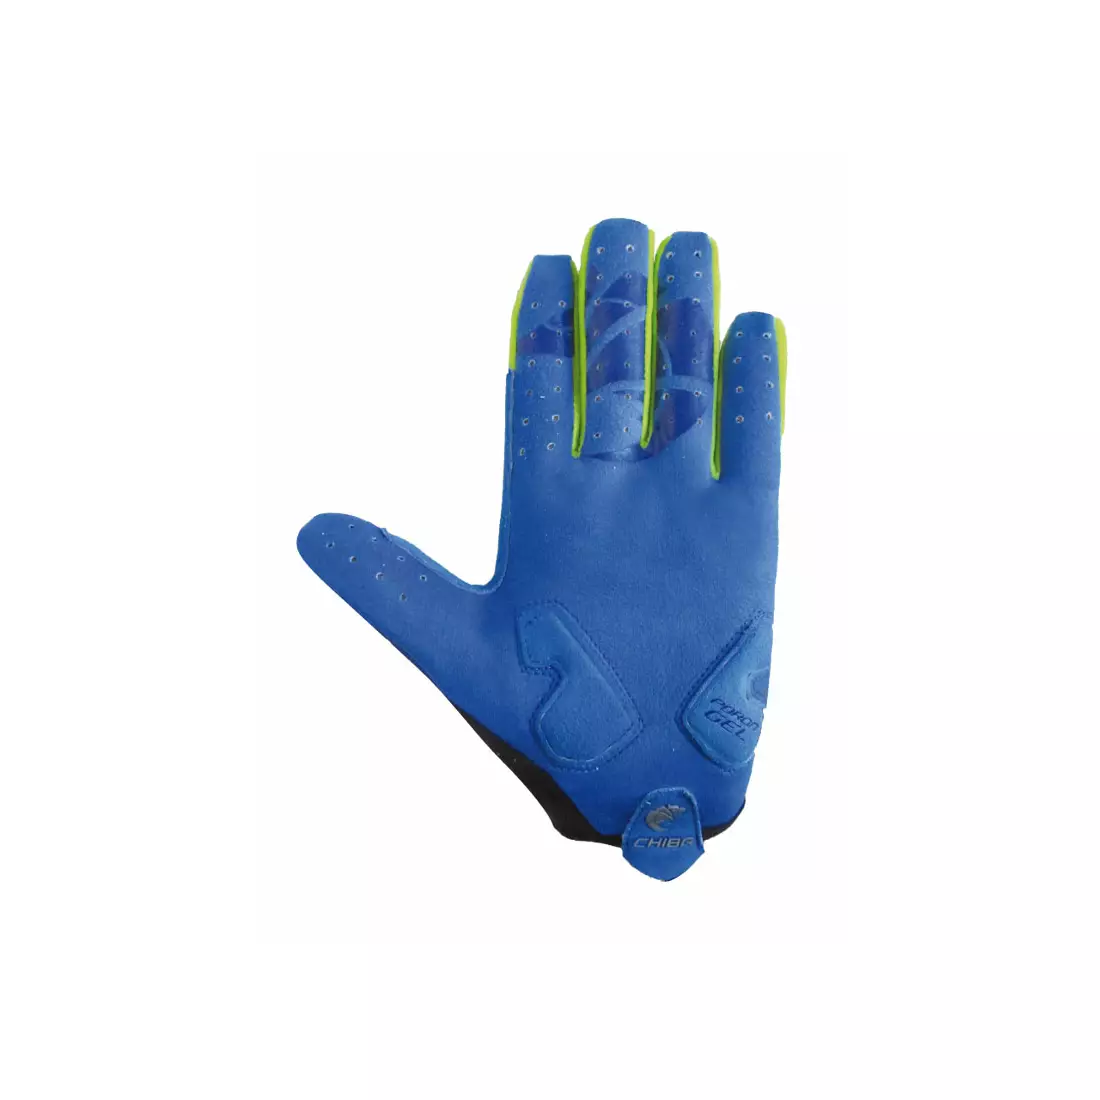 CHIBA rękawiczki rowerowe TWISTER, niebieskie 30737